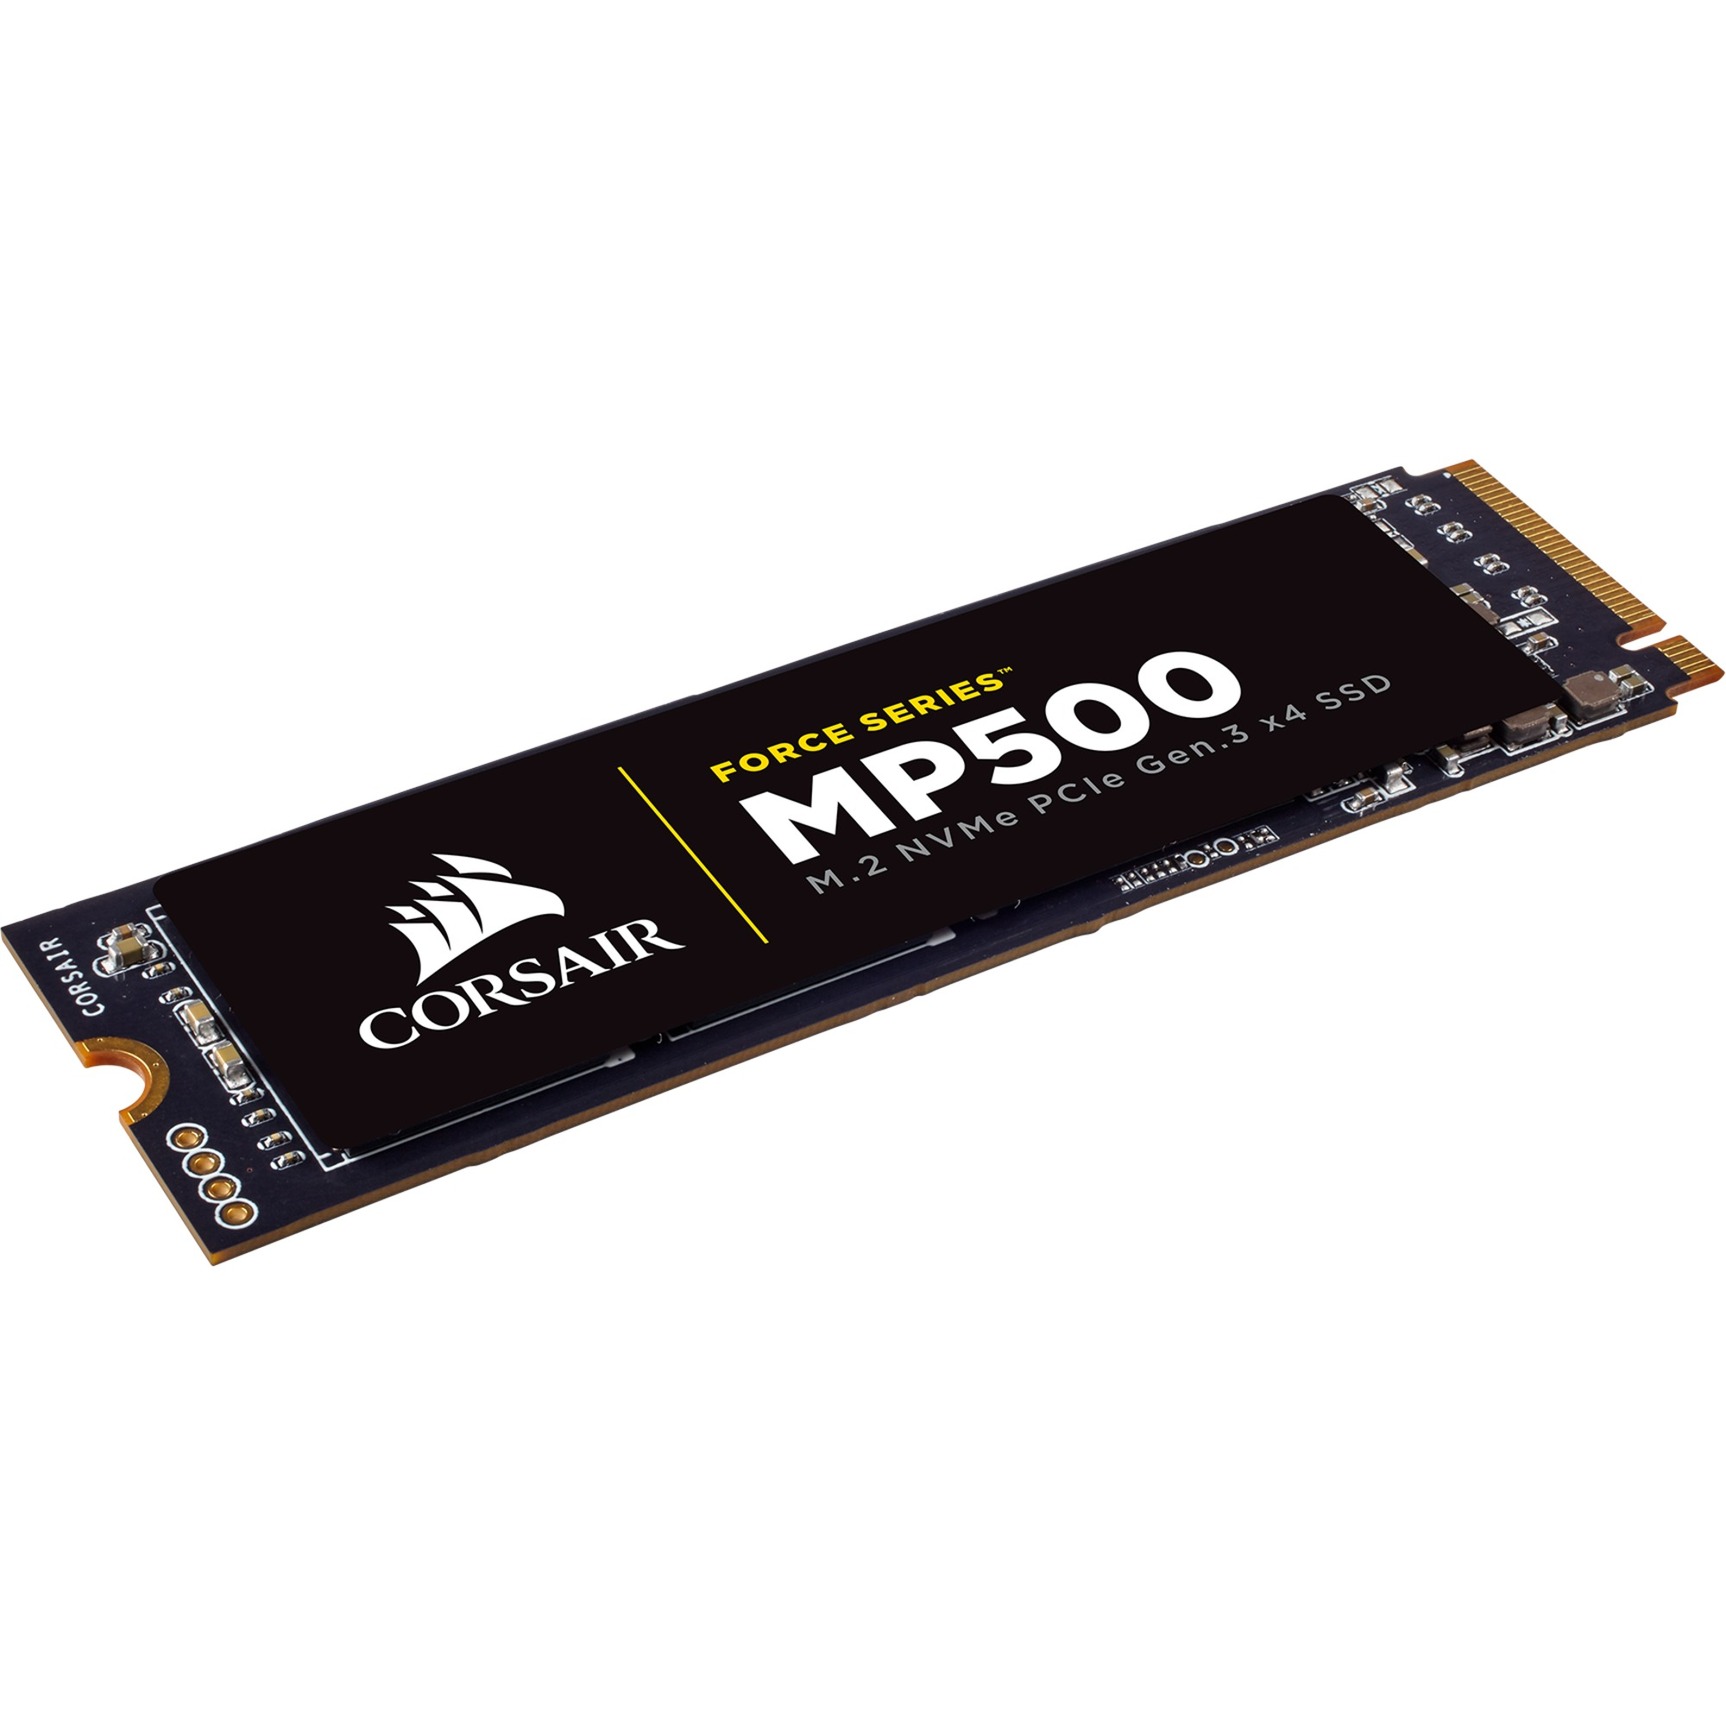 CSSD-F960GBMP500 urz?dzenie SSD 960 GB PCI Express 3.0 M.2, Dysk SSD